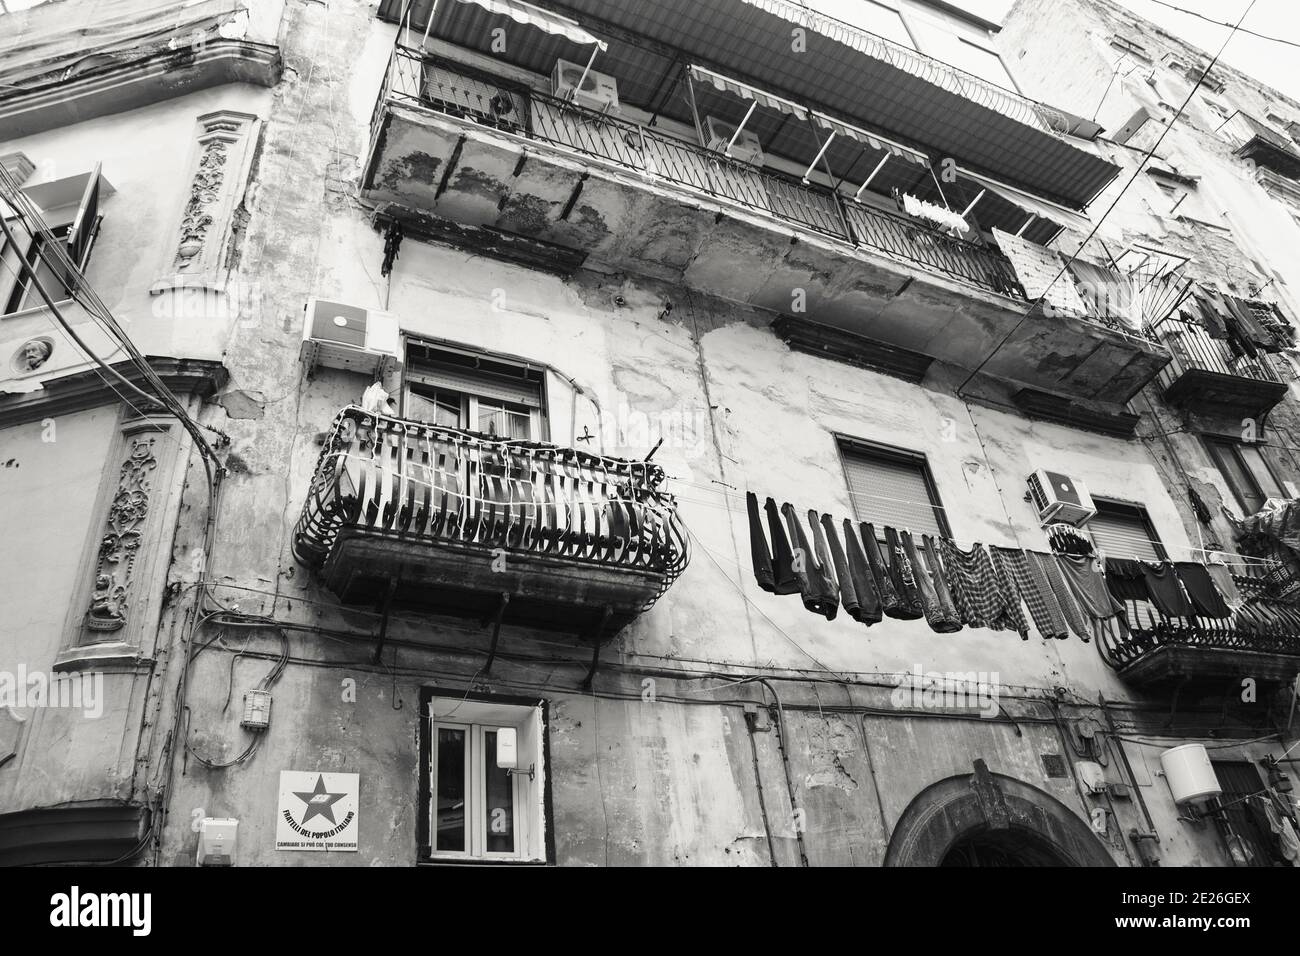 NEAPEL, ITALIEN - 15. DEZEMBER 2019: Enge Straßen in der Innenstadt in Rione Sanita Nachbarschaft in Neapel Stella Viertel mit hängenden bunten Wäsche, t Stockfoto